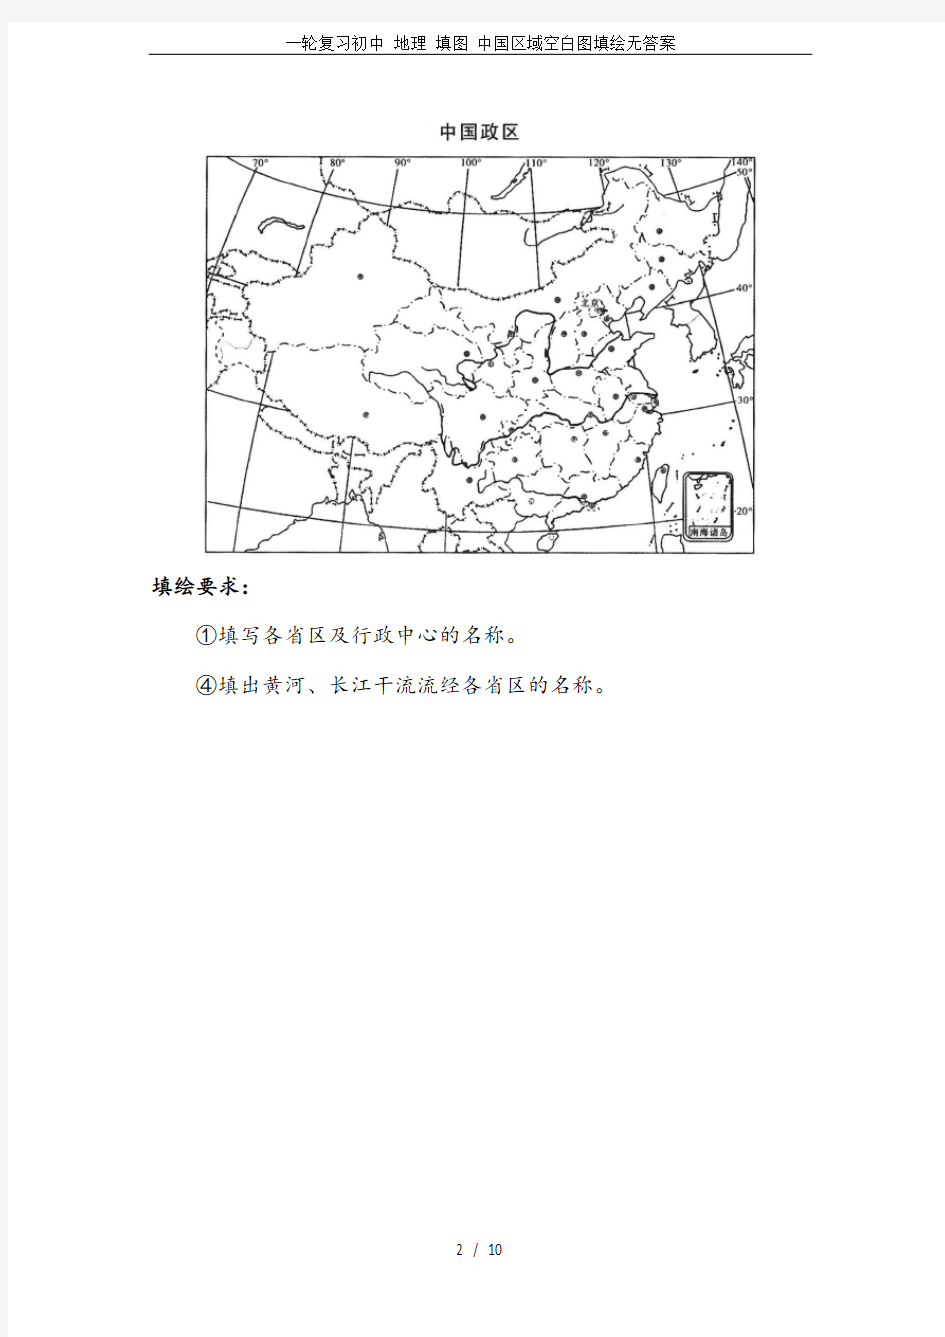 一轮复习初中 地理 填图 中国区域空白图填绘无答案